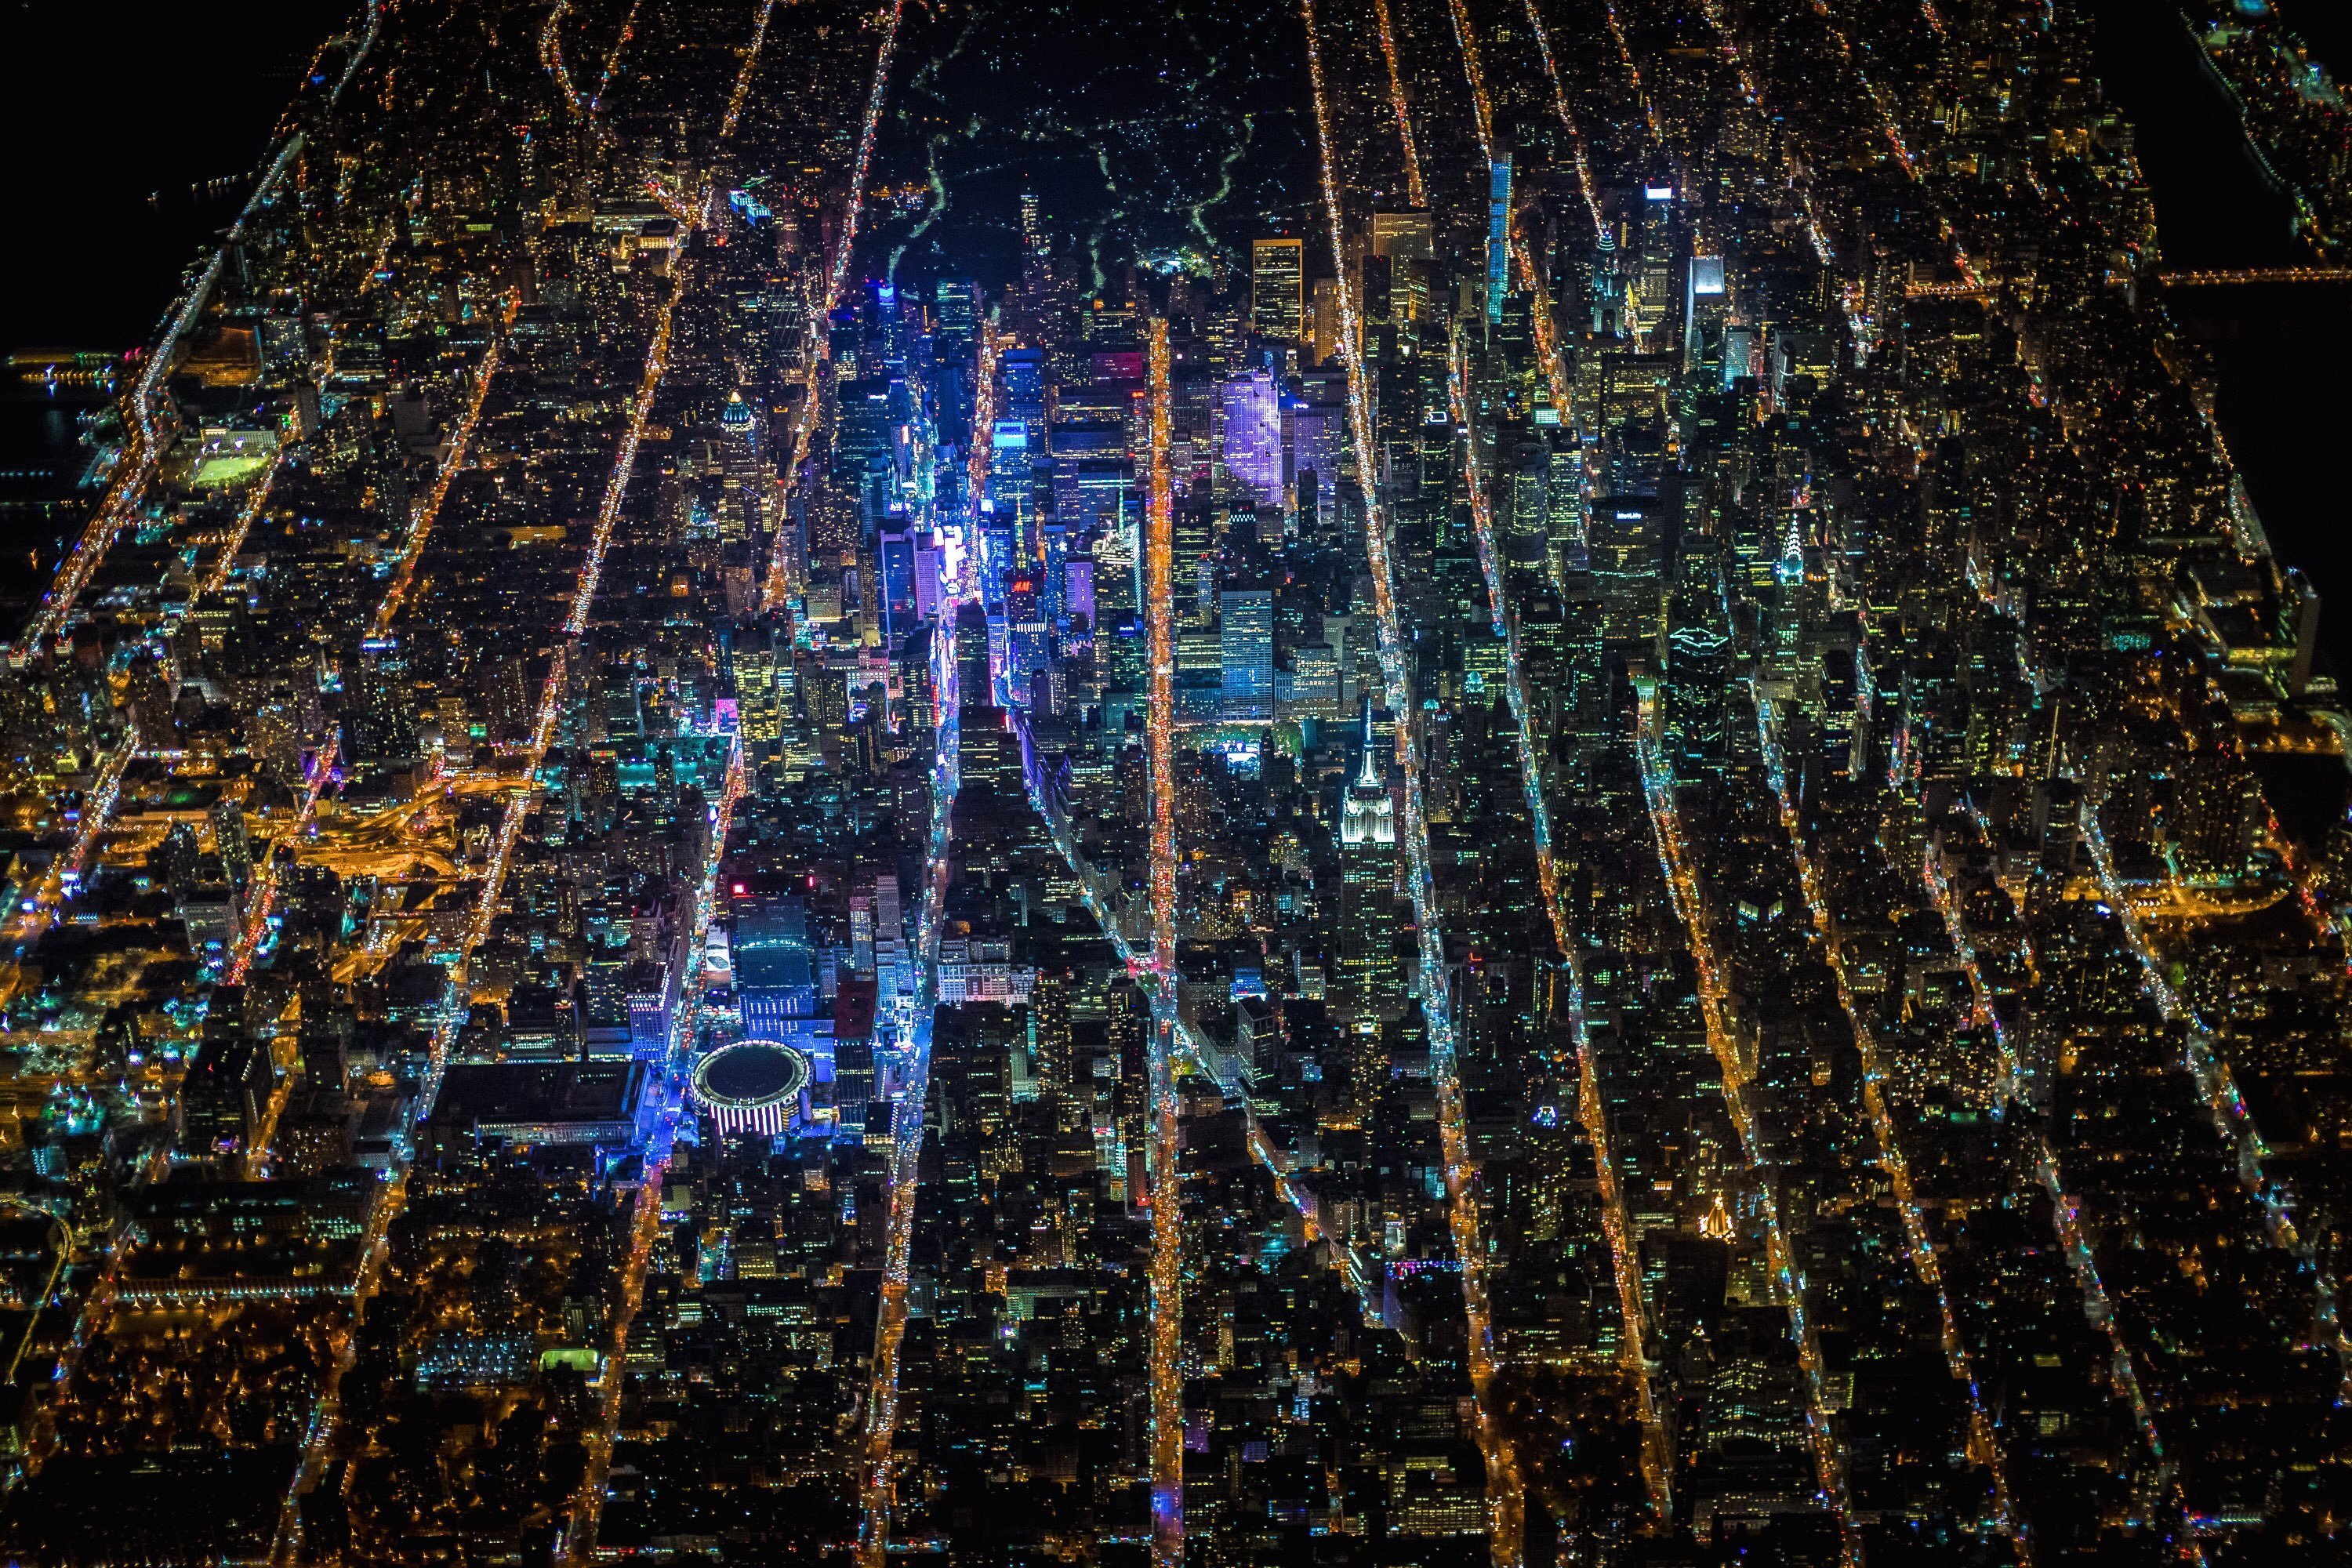 Нью-Йорк ночью с высоты